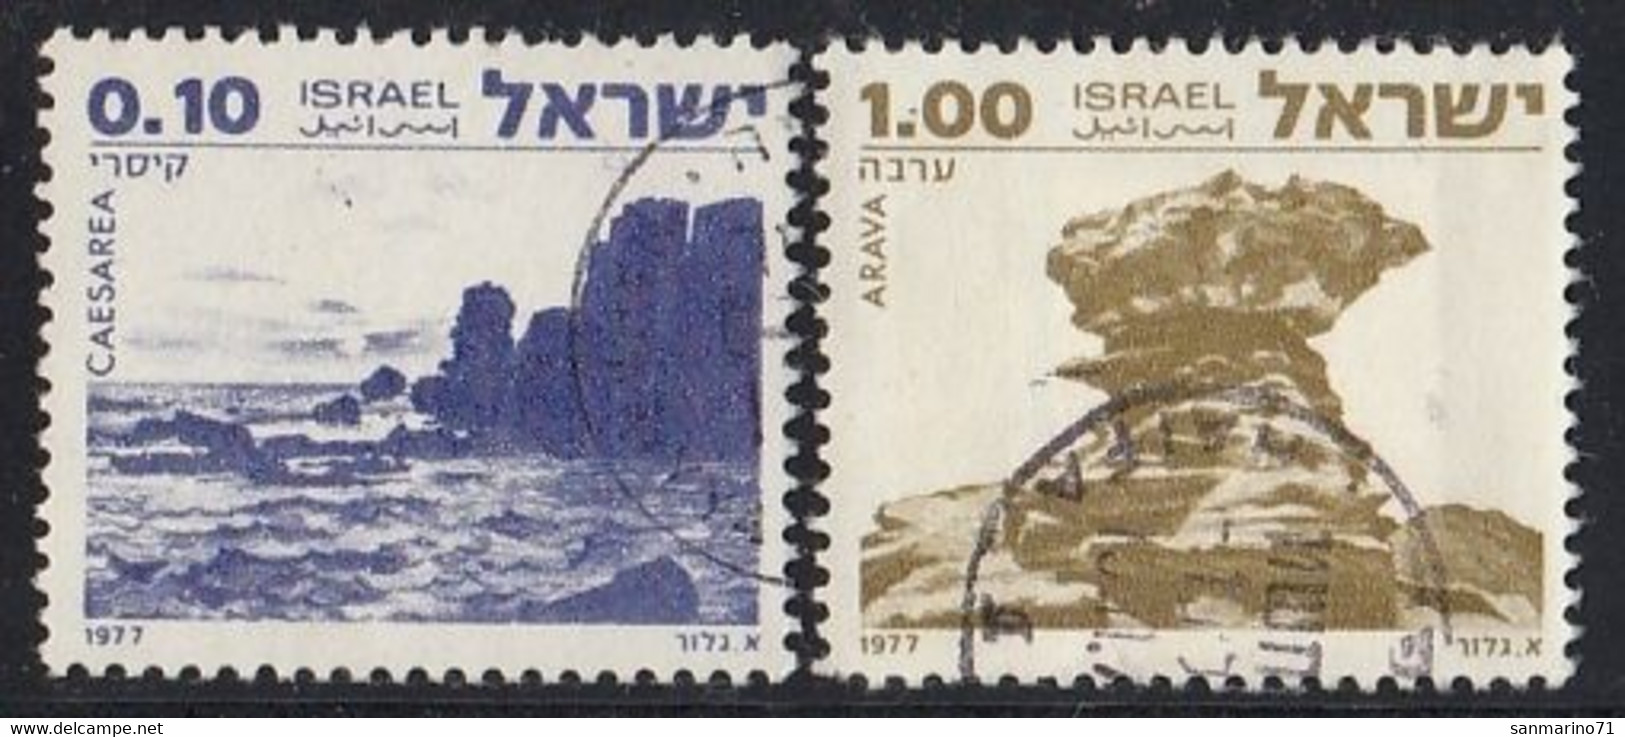 ISRAEL 719-720,used,falc Hinged - Usati (senza Tab)